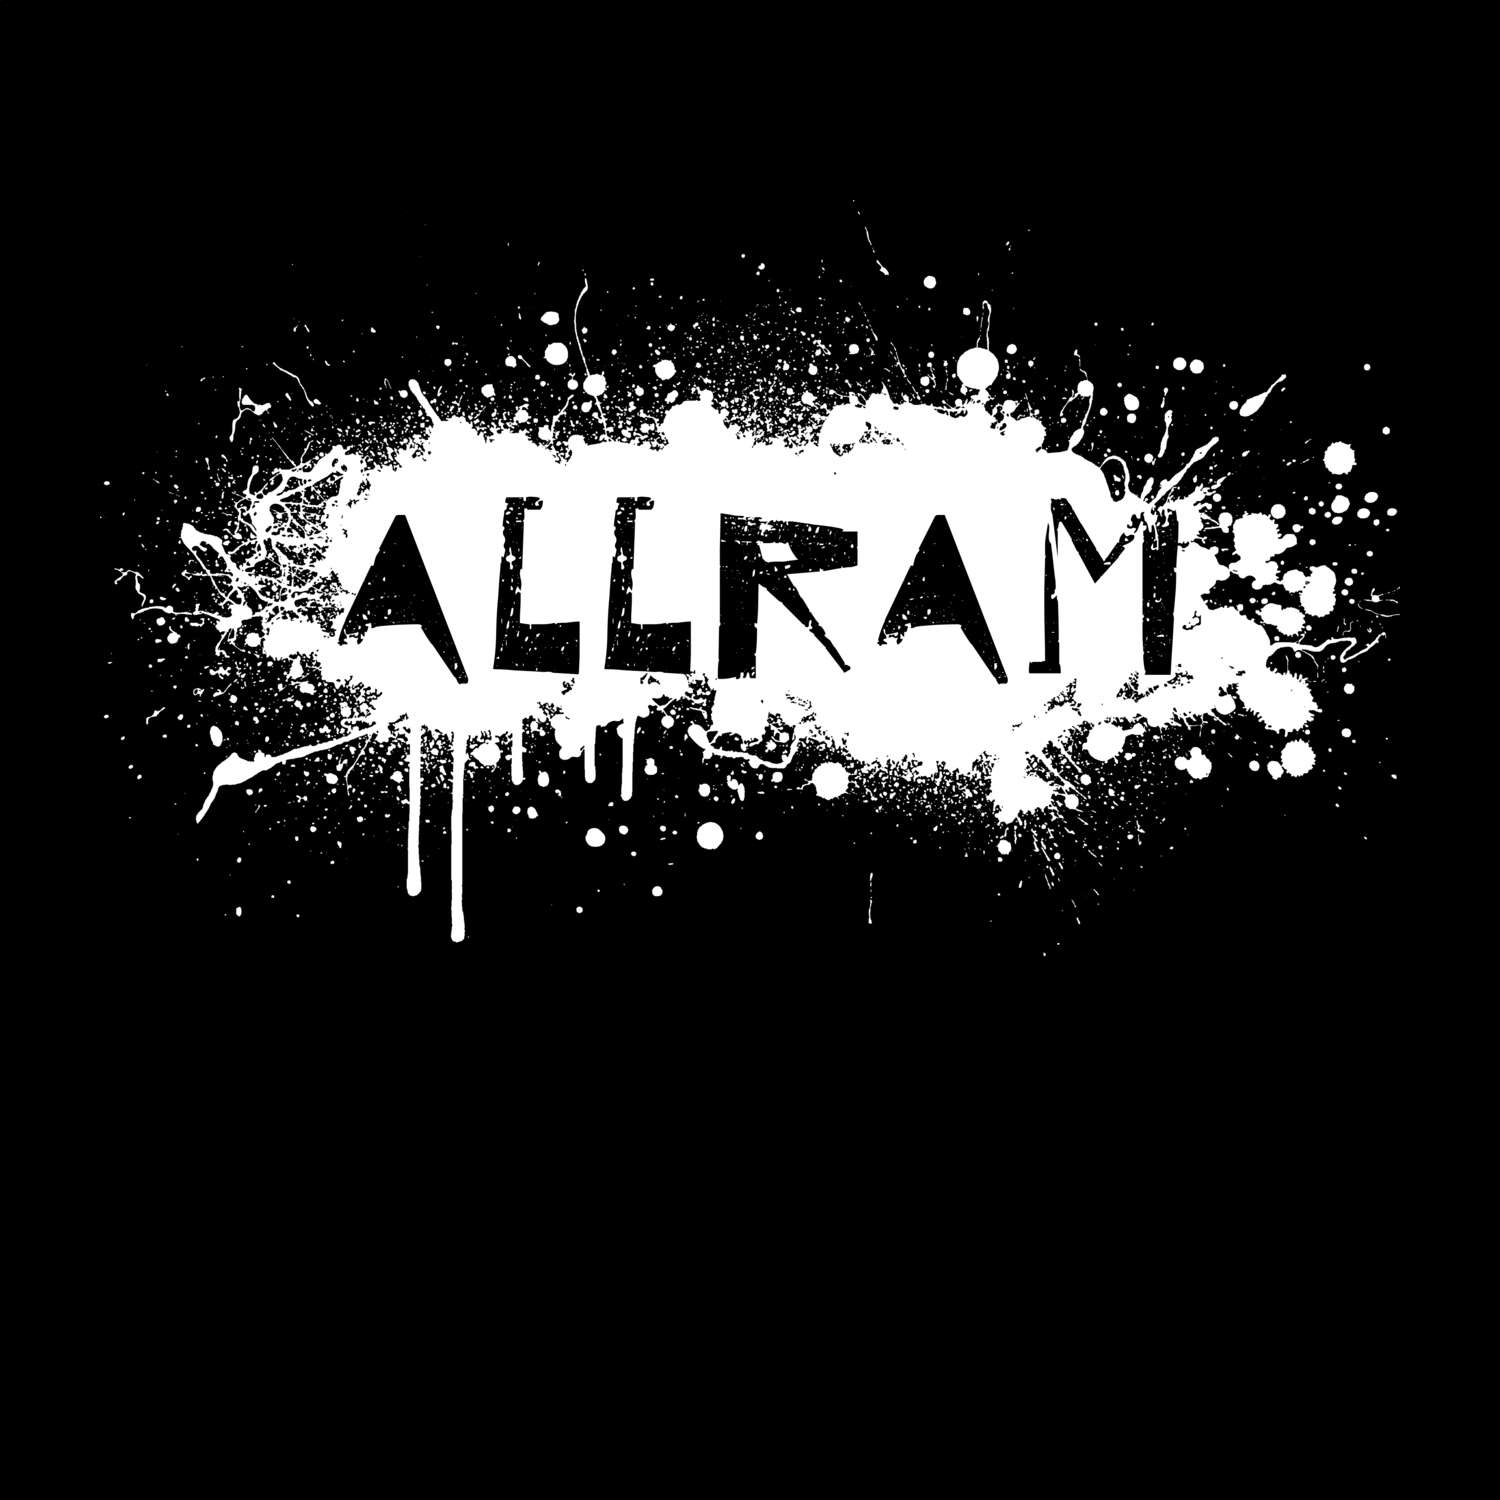 Allram T-Shirt »Paint Splash Punk«